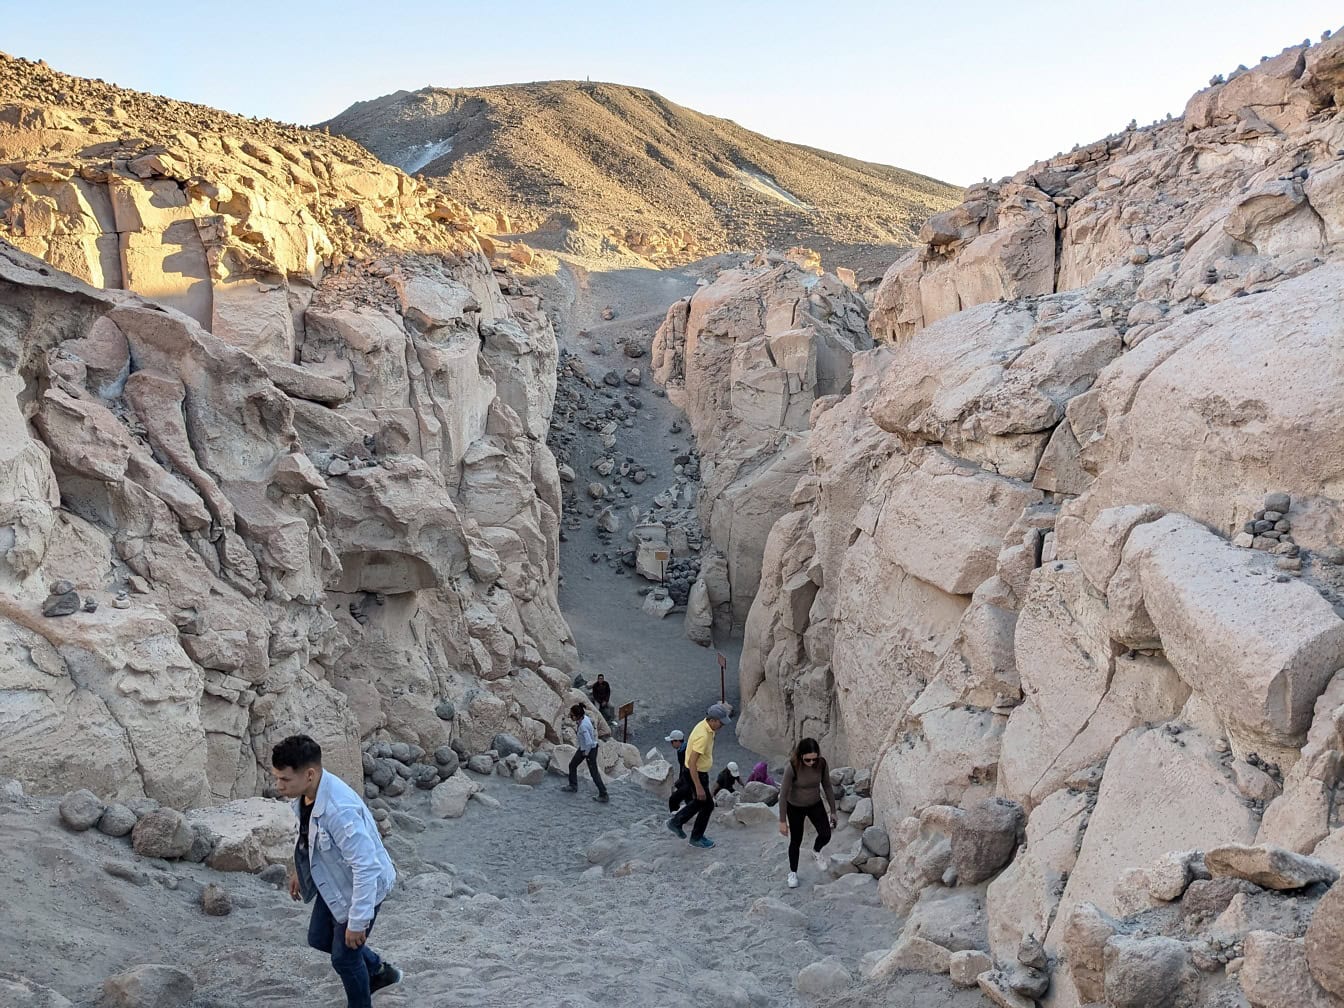 Gruppe af mennesker, der går gennem en canyon i Arequipa i Peru